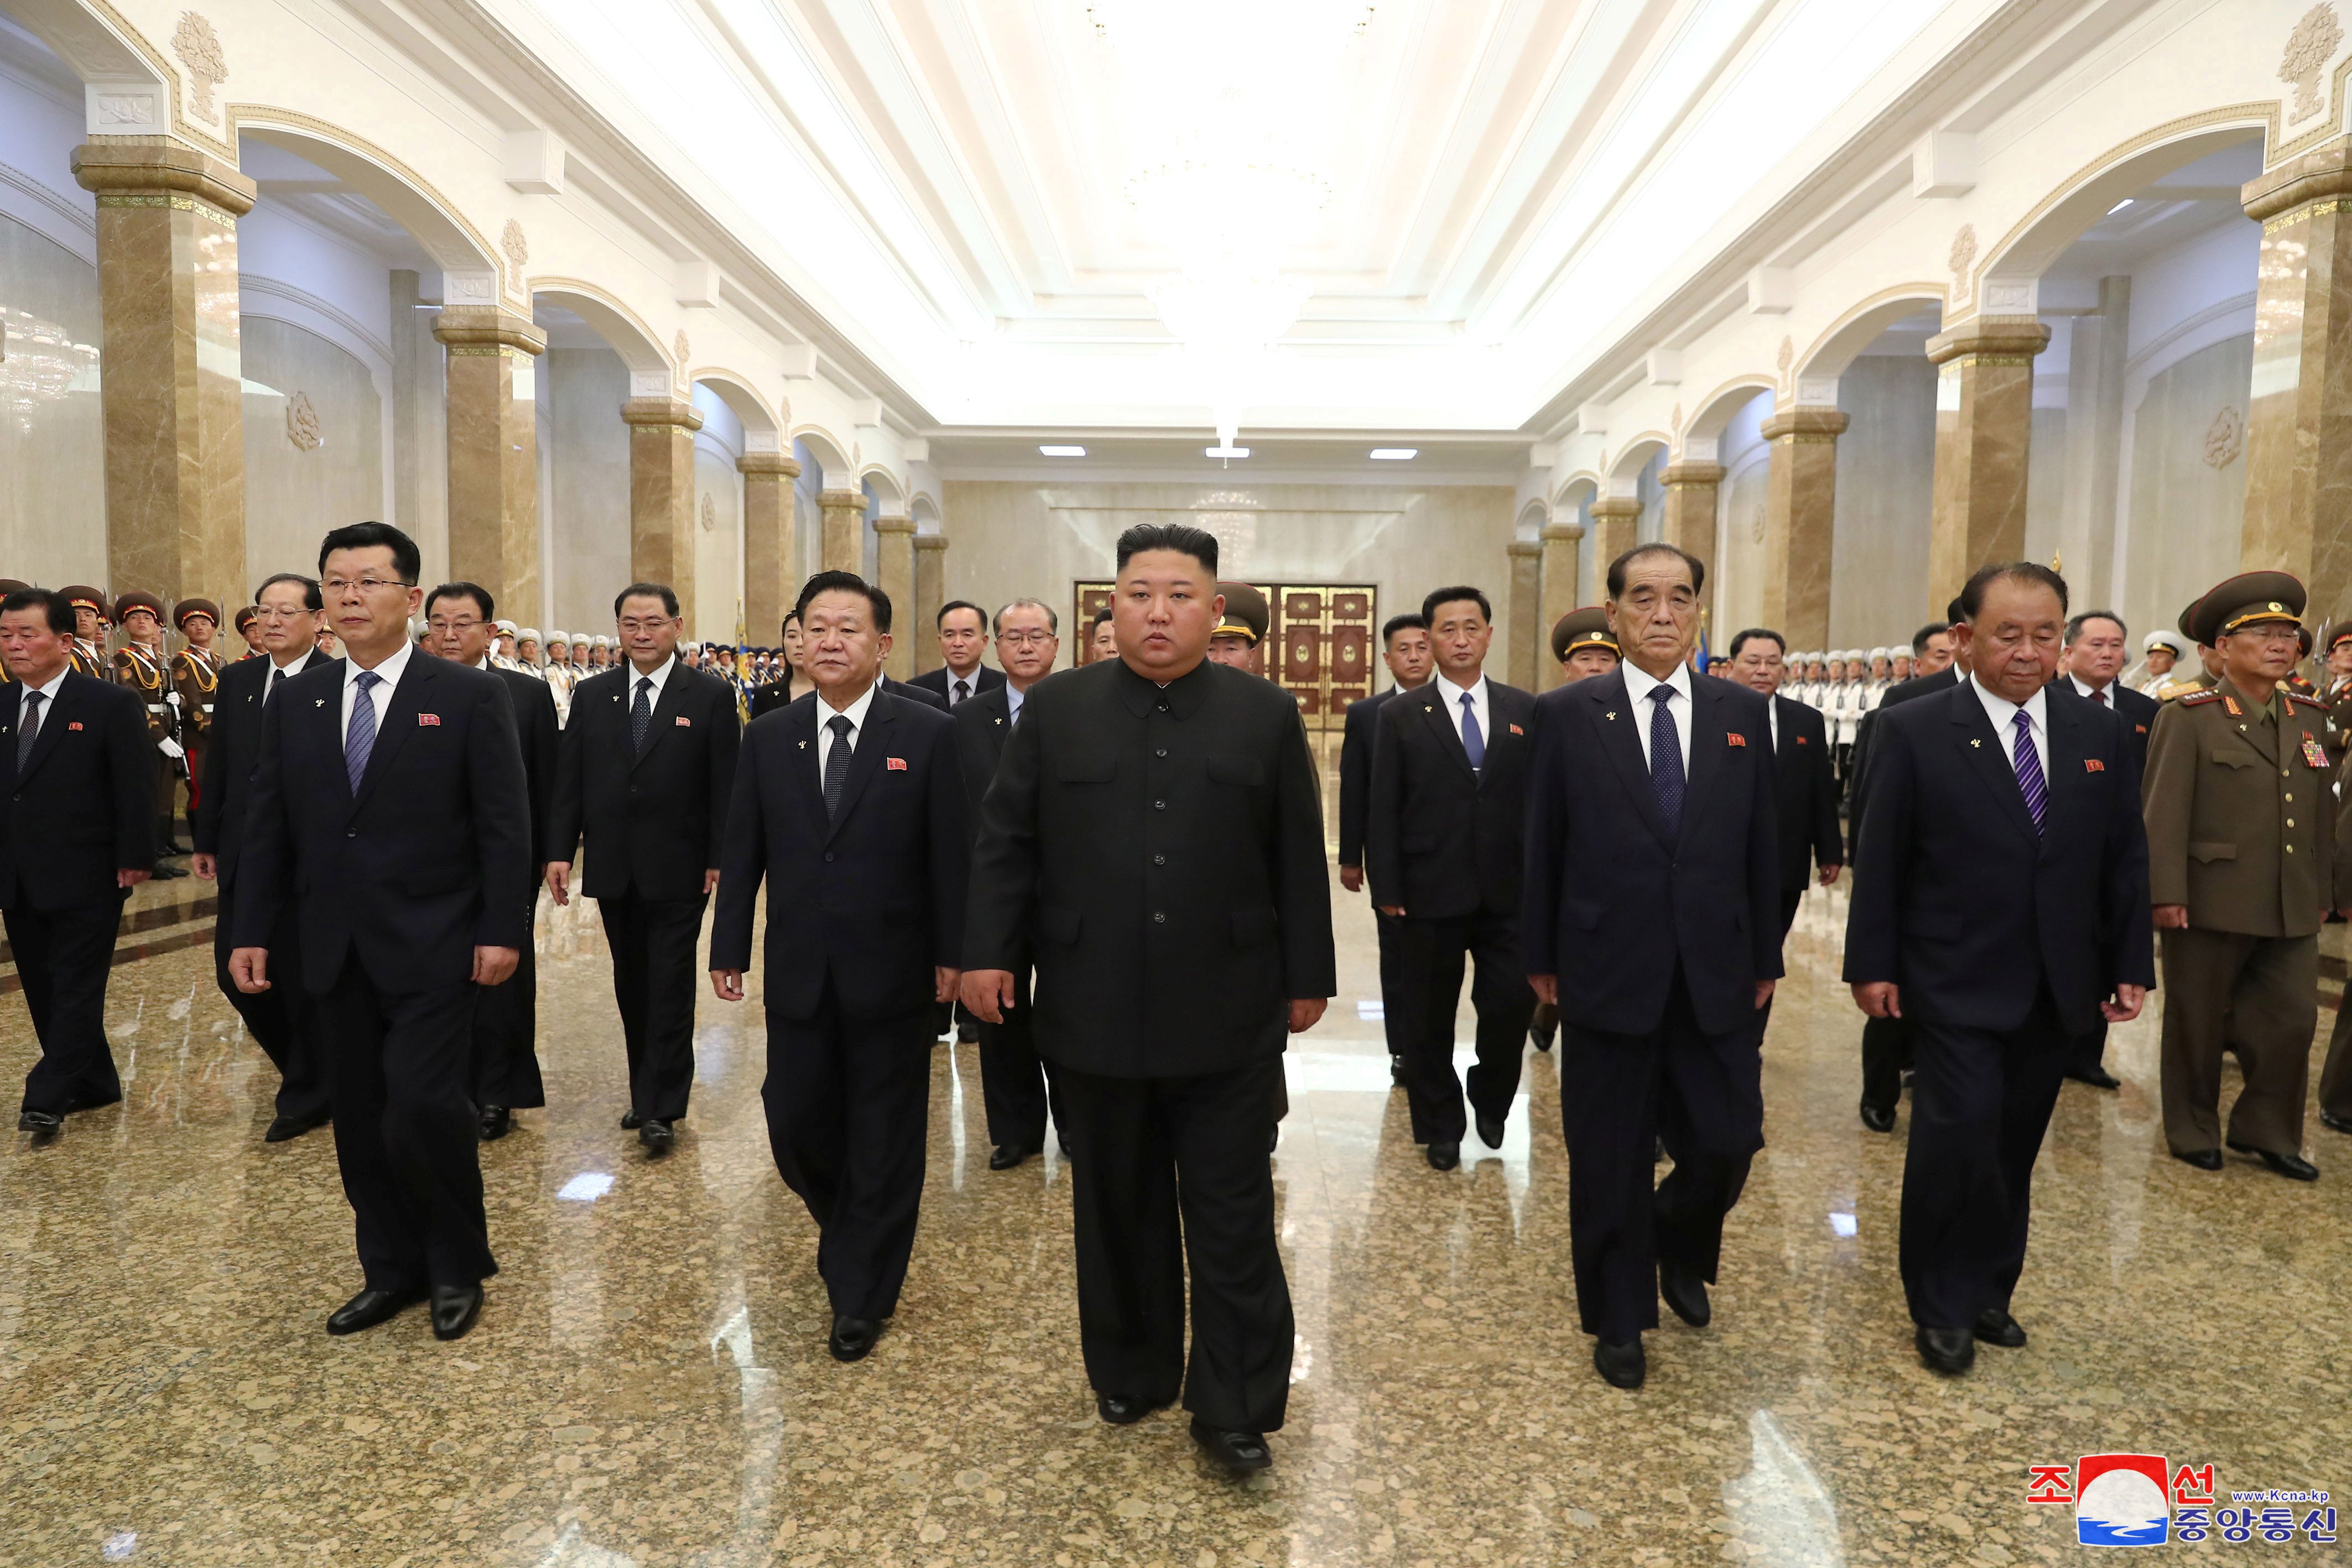 Kim Jong-un visita el palacio donde están los restos del patriarca norcoreano (Reuters/KCNA)